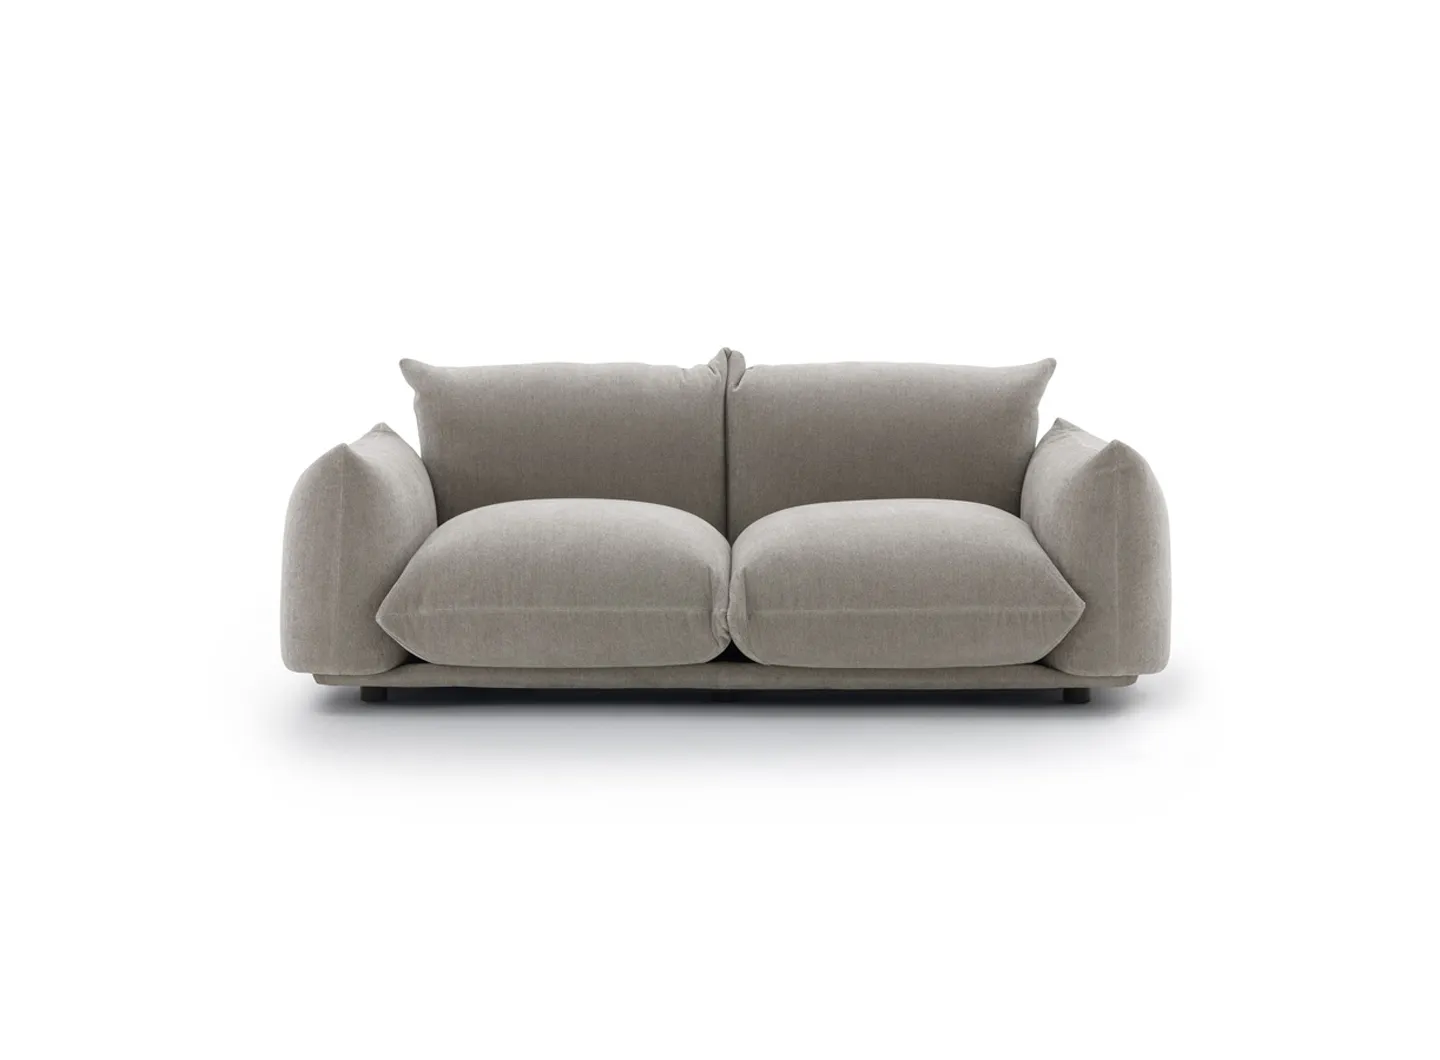 Marenco sofa - Fabric version